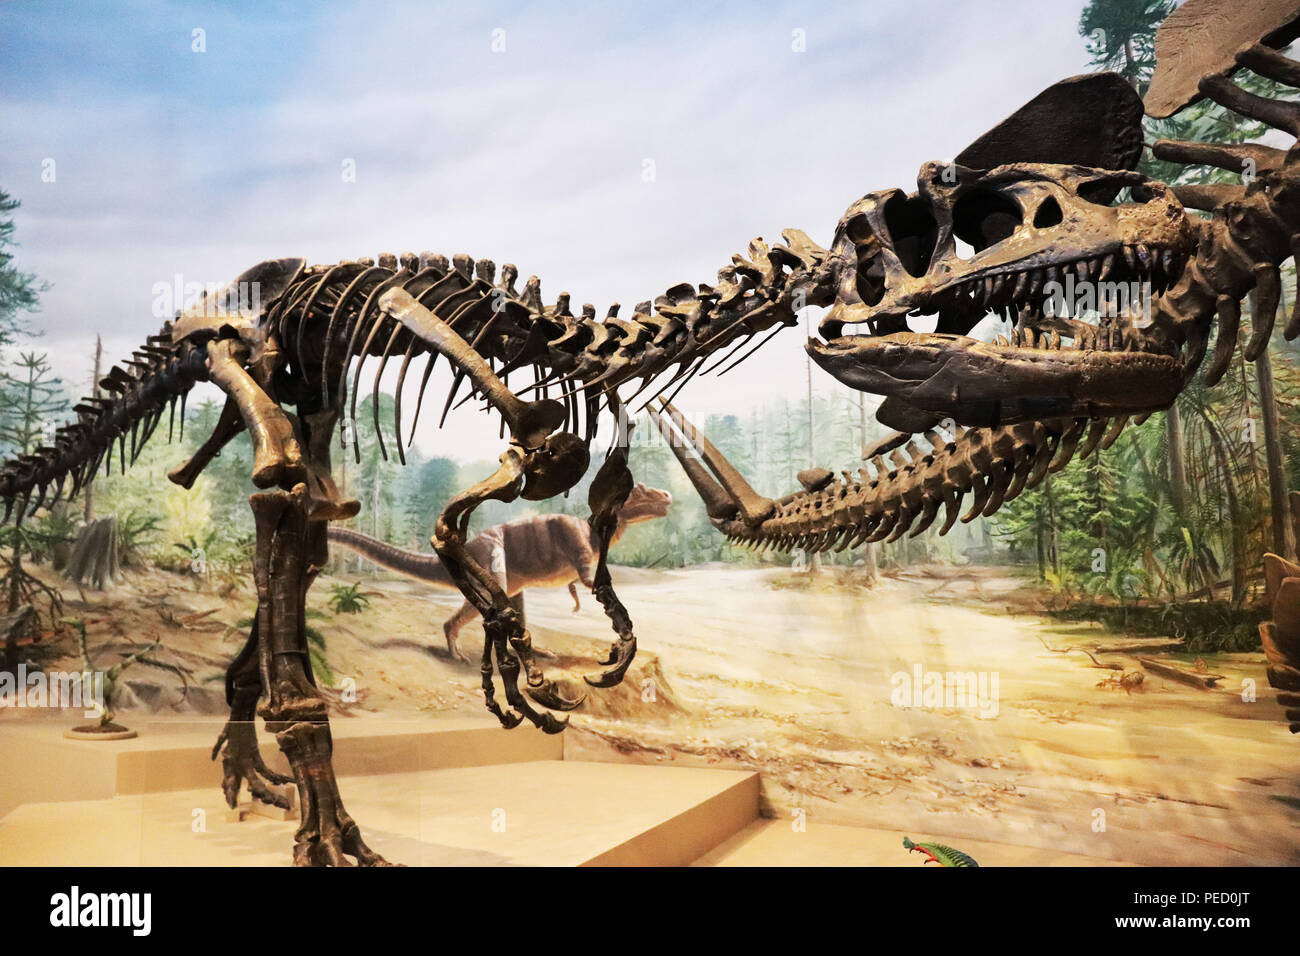 Stunning Raptor dinosaur skull Bambiraptor fossil replica